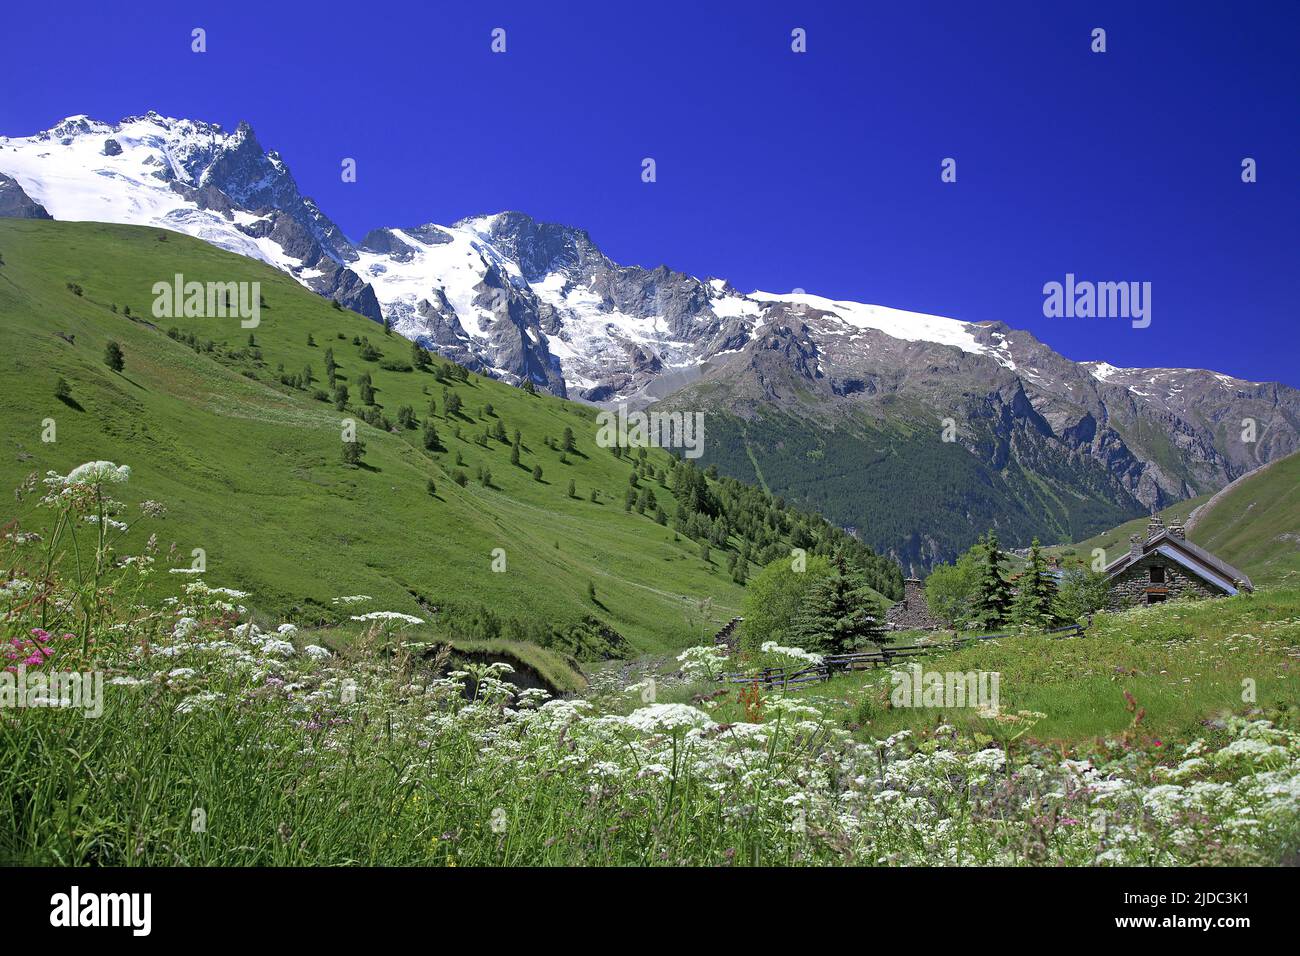 France, Hautes-Alpes La Grave, Meije massif, Ecrins National Park, chalets Stock Photo